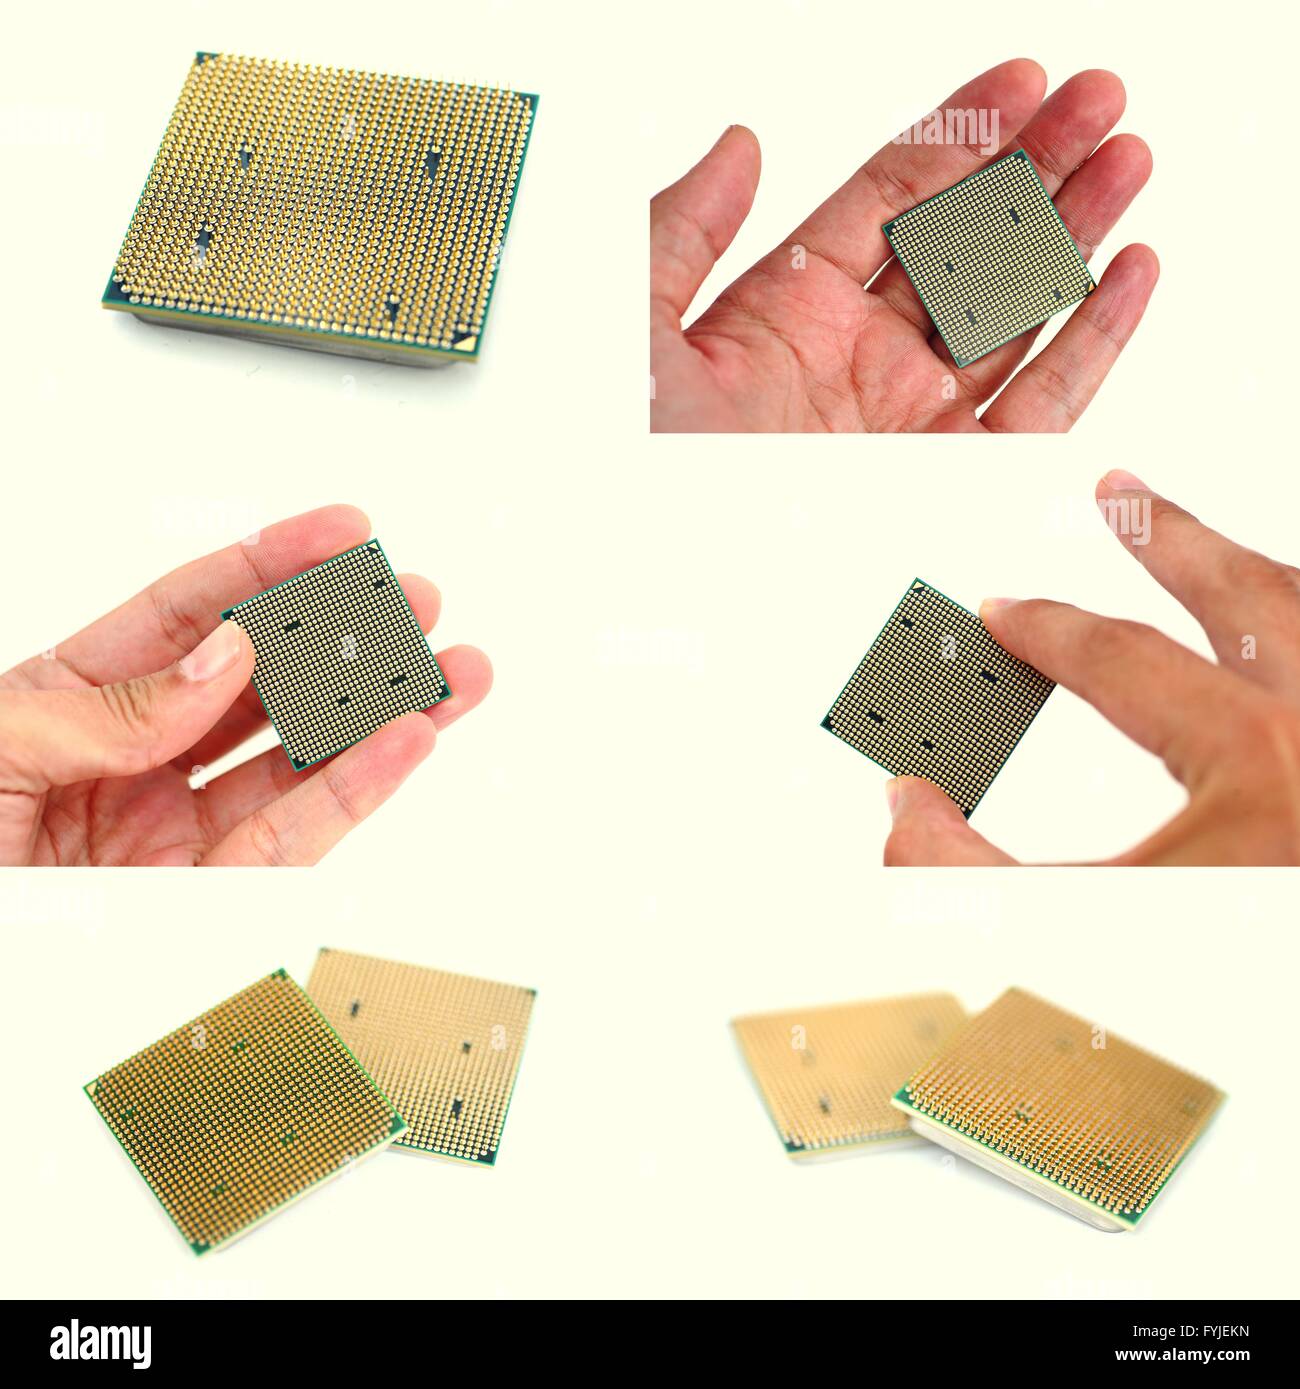 Le moderne CPU in mens mani set di immagini. Lato posteriore del microprocessore con gambe d'oro Foto Stock